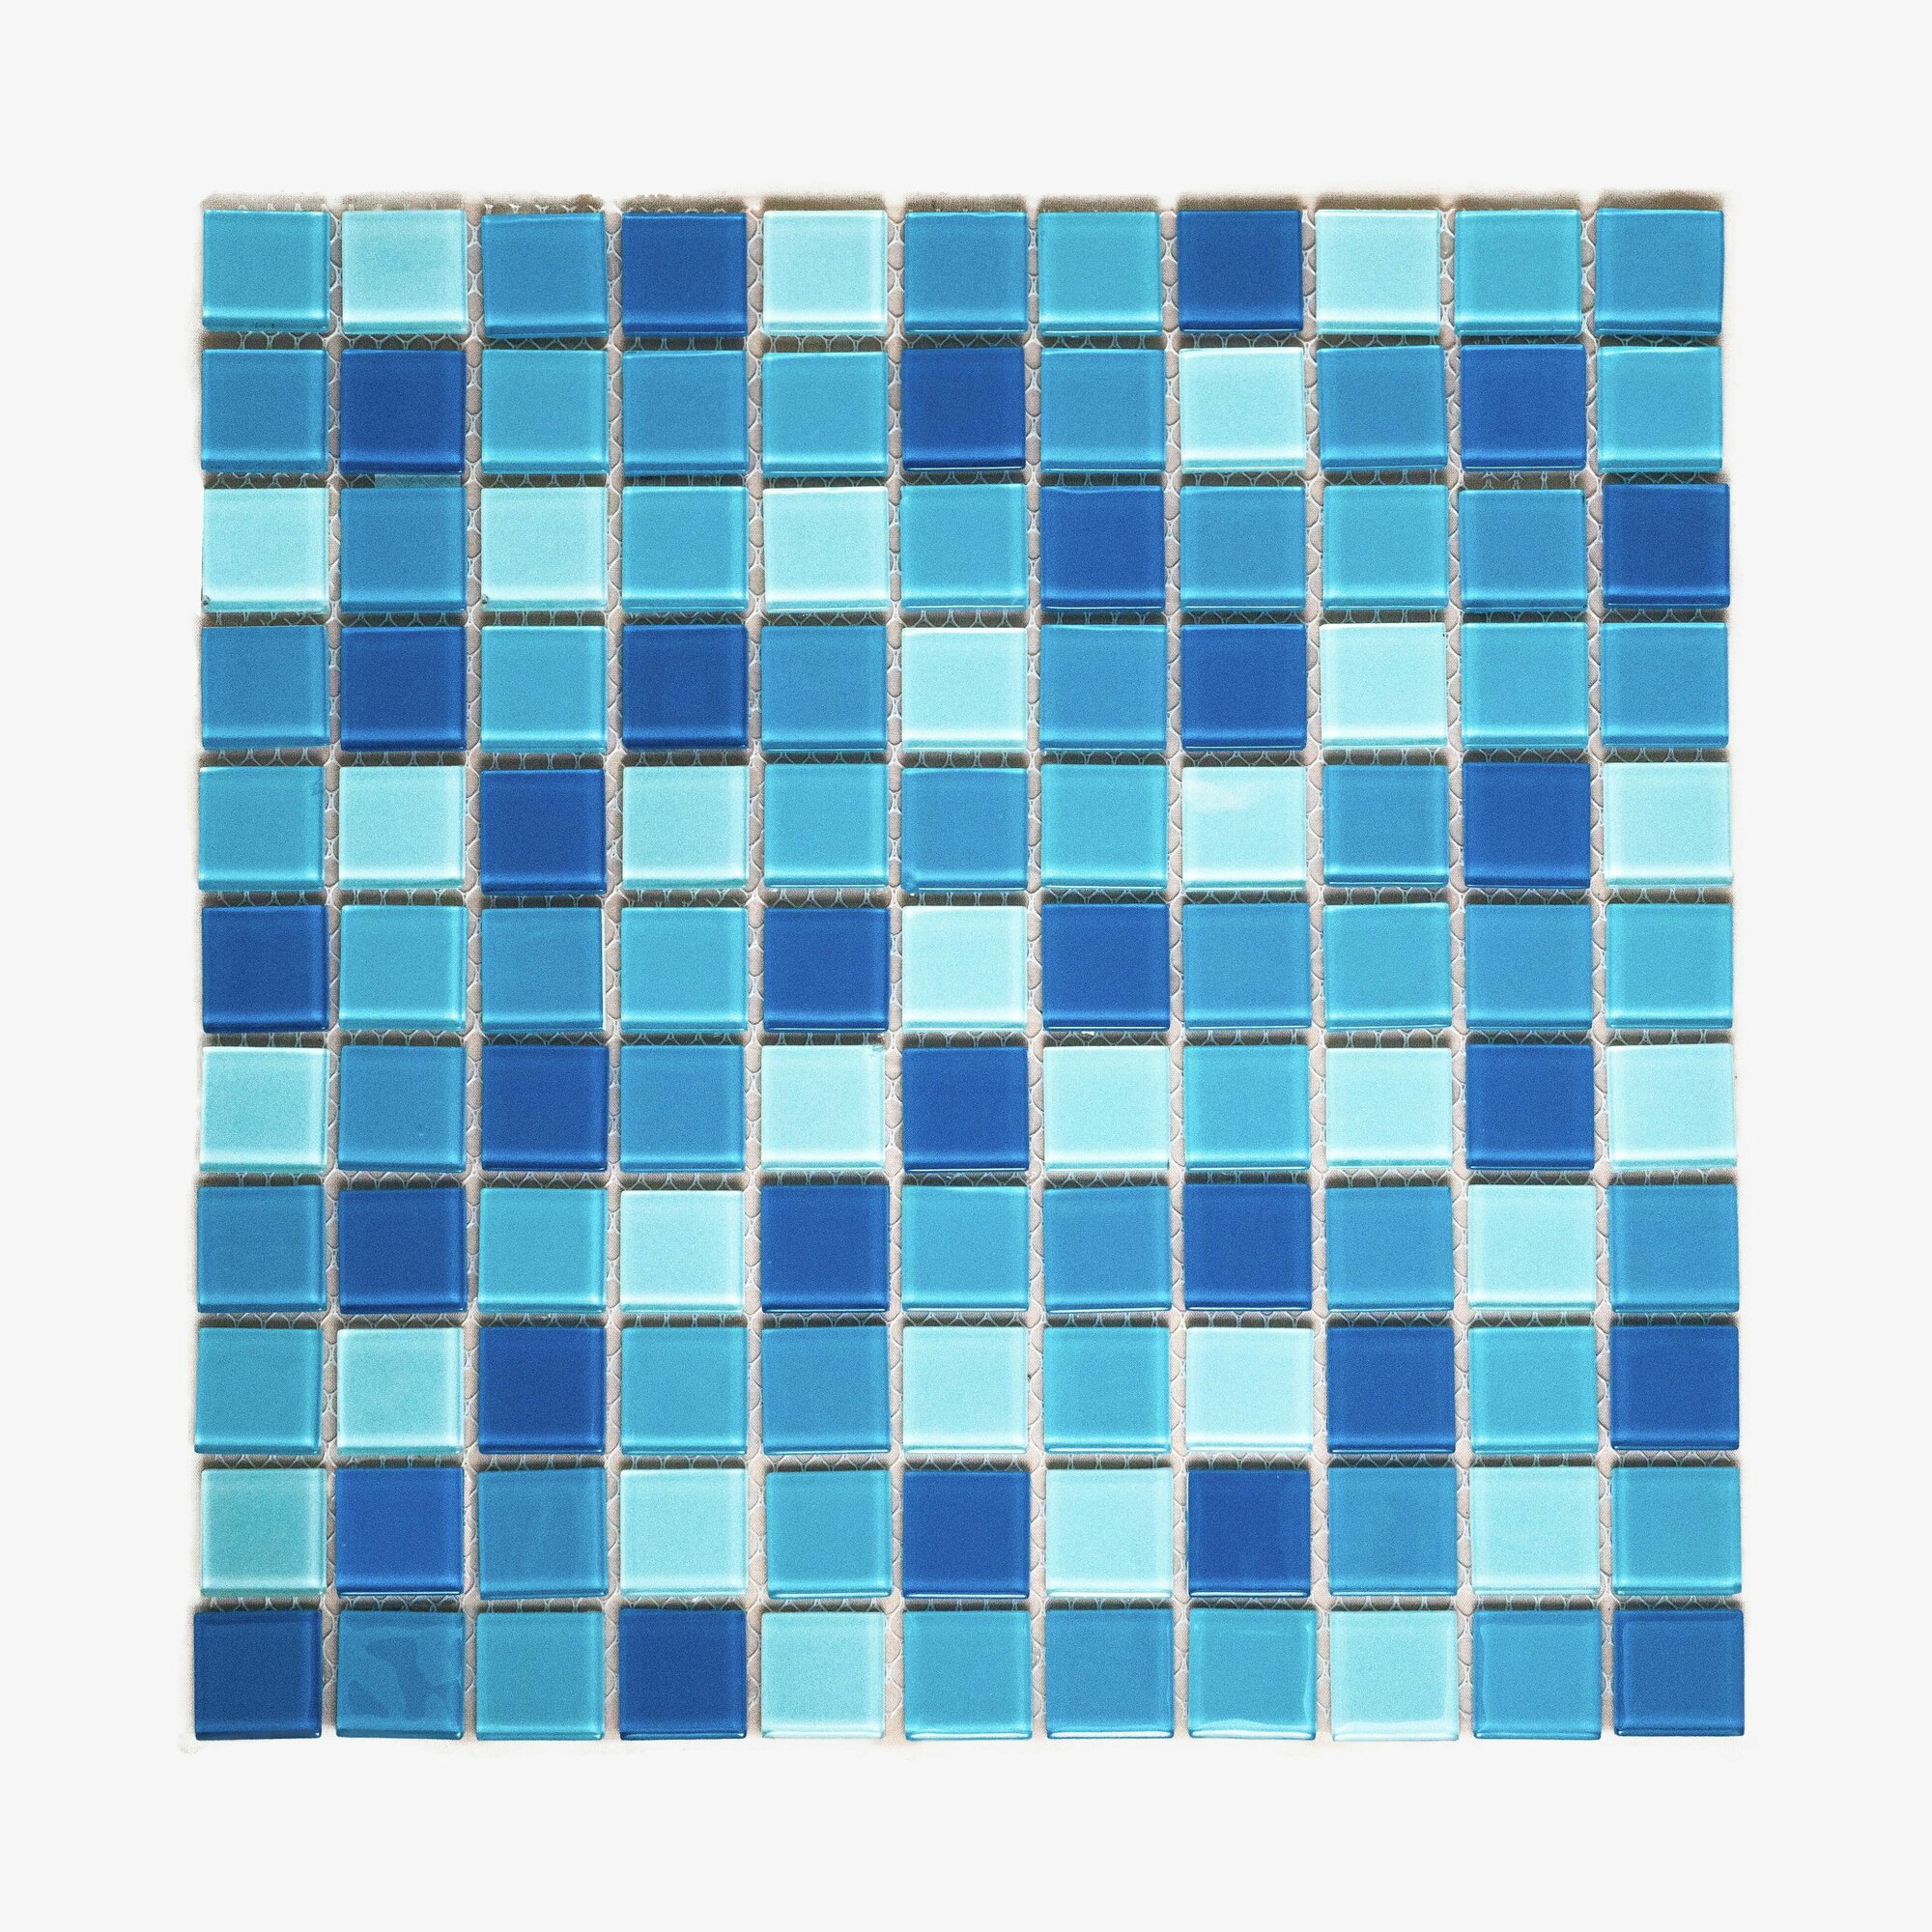 Плитка мозаика MIRO (серия Barium №27), стеклянная плитка мозаика для ванной комнаты, для душевой, для фартука на кухне, 2 шт.